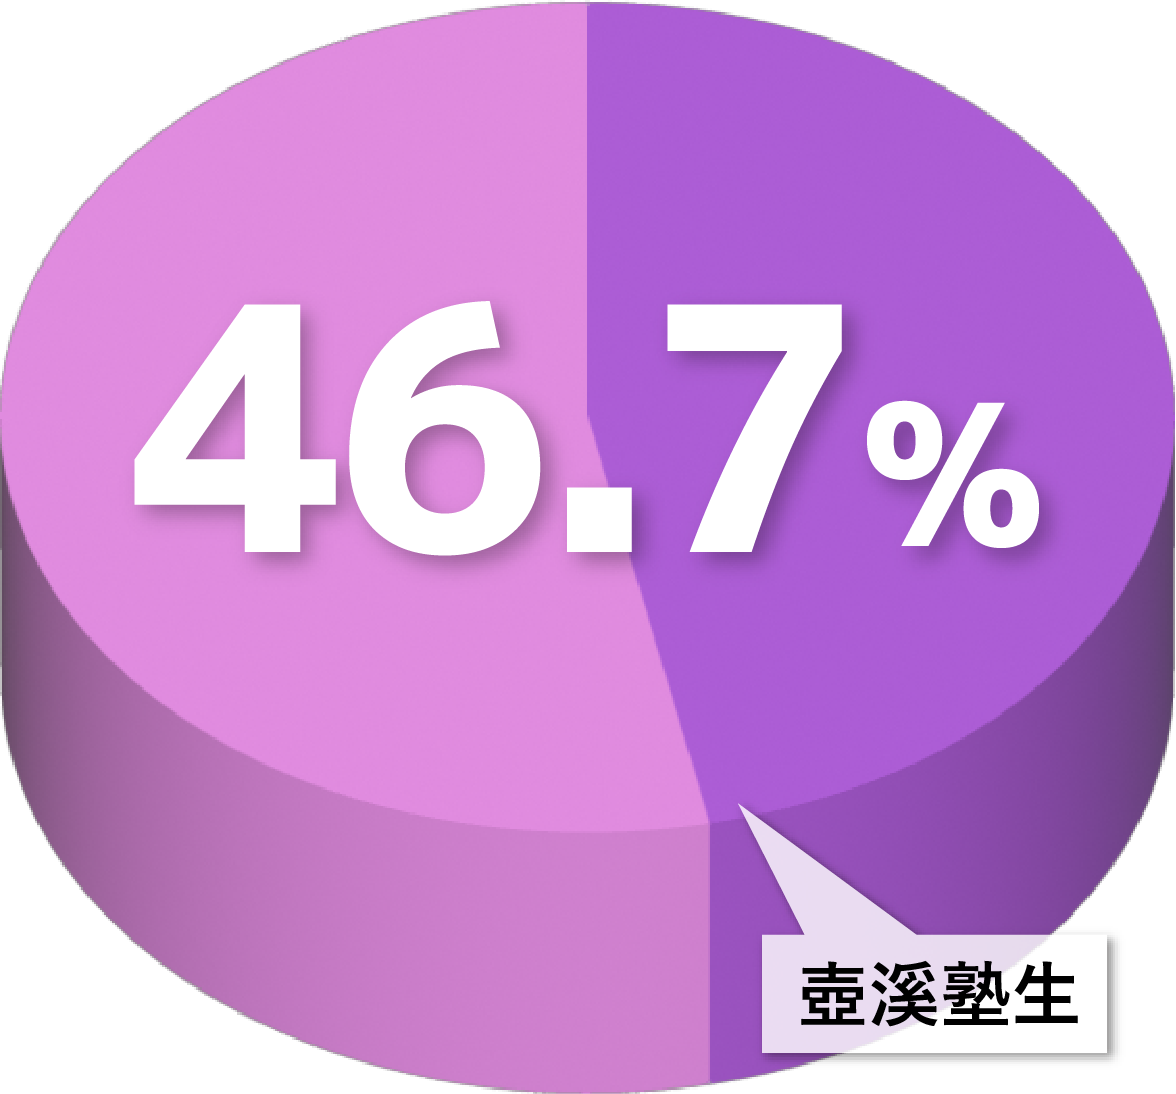 57.1%